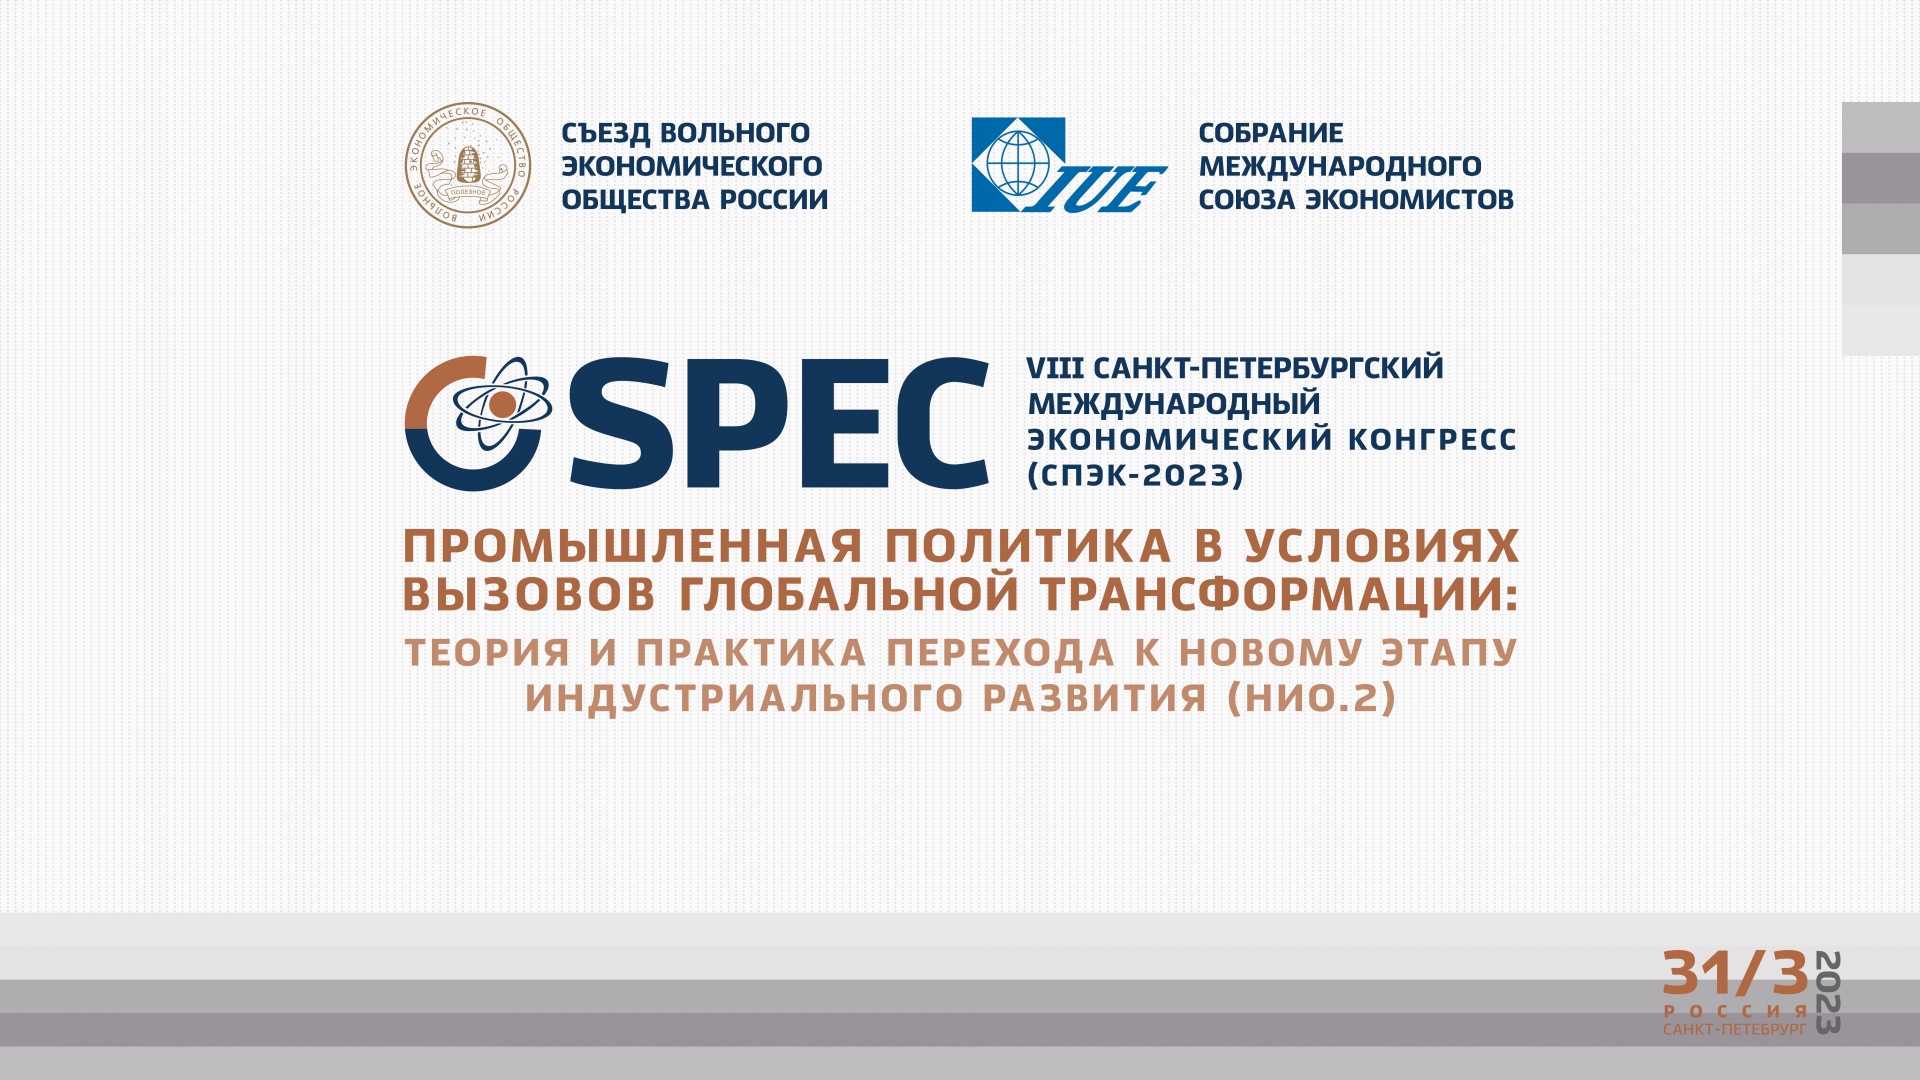 VIII Санкт-Петербургский экономический конгресс (СПЭК-2023)